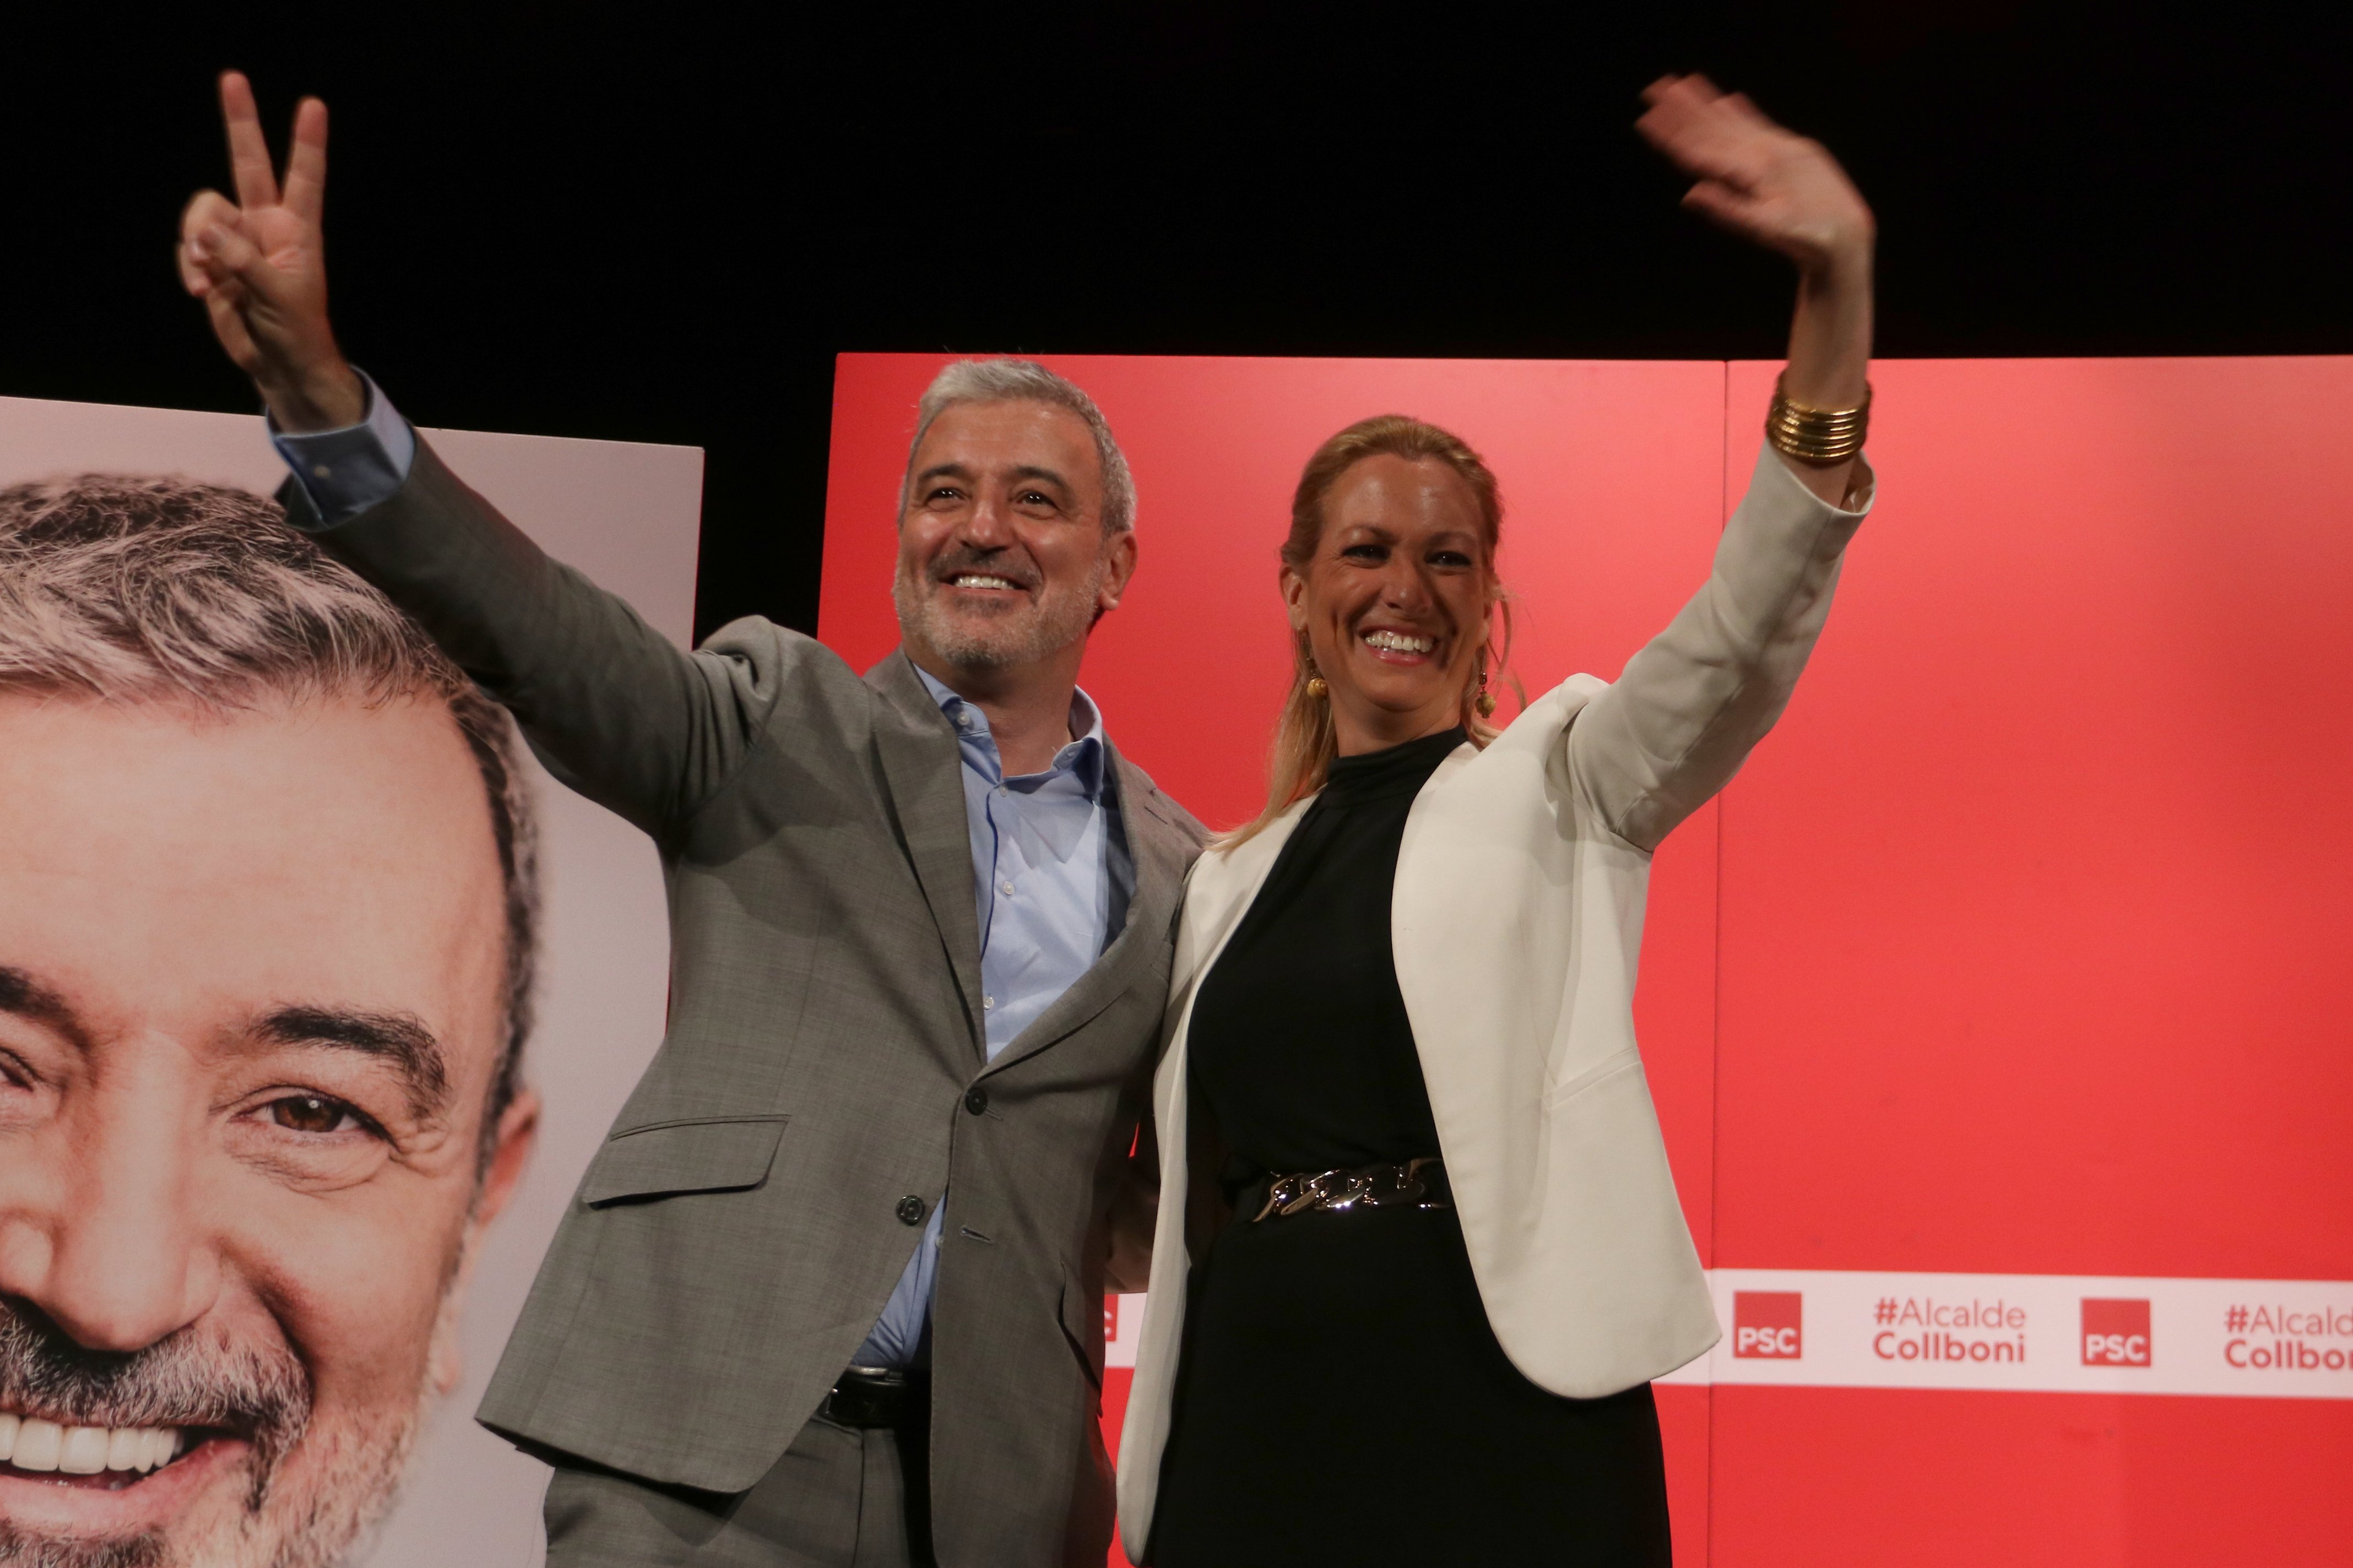 Collboni se revuelve contra Trias: "Es el candidato de la inseguridad jurídica y política"